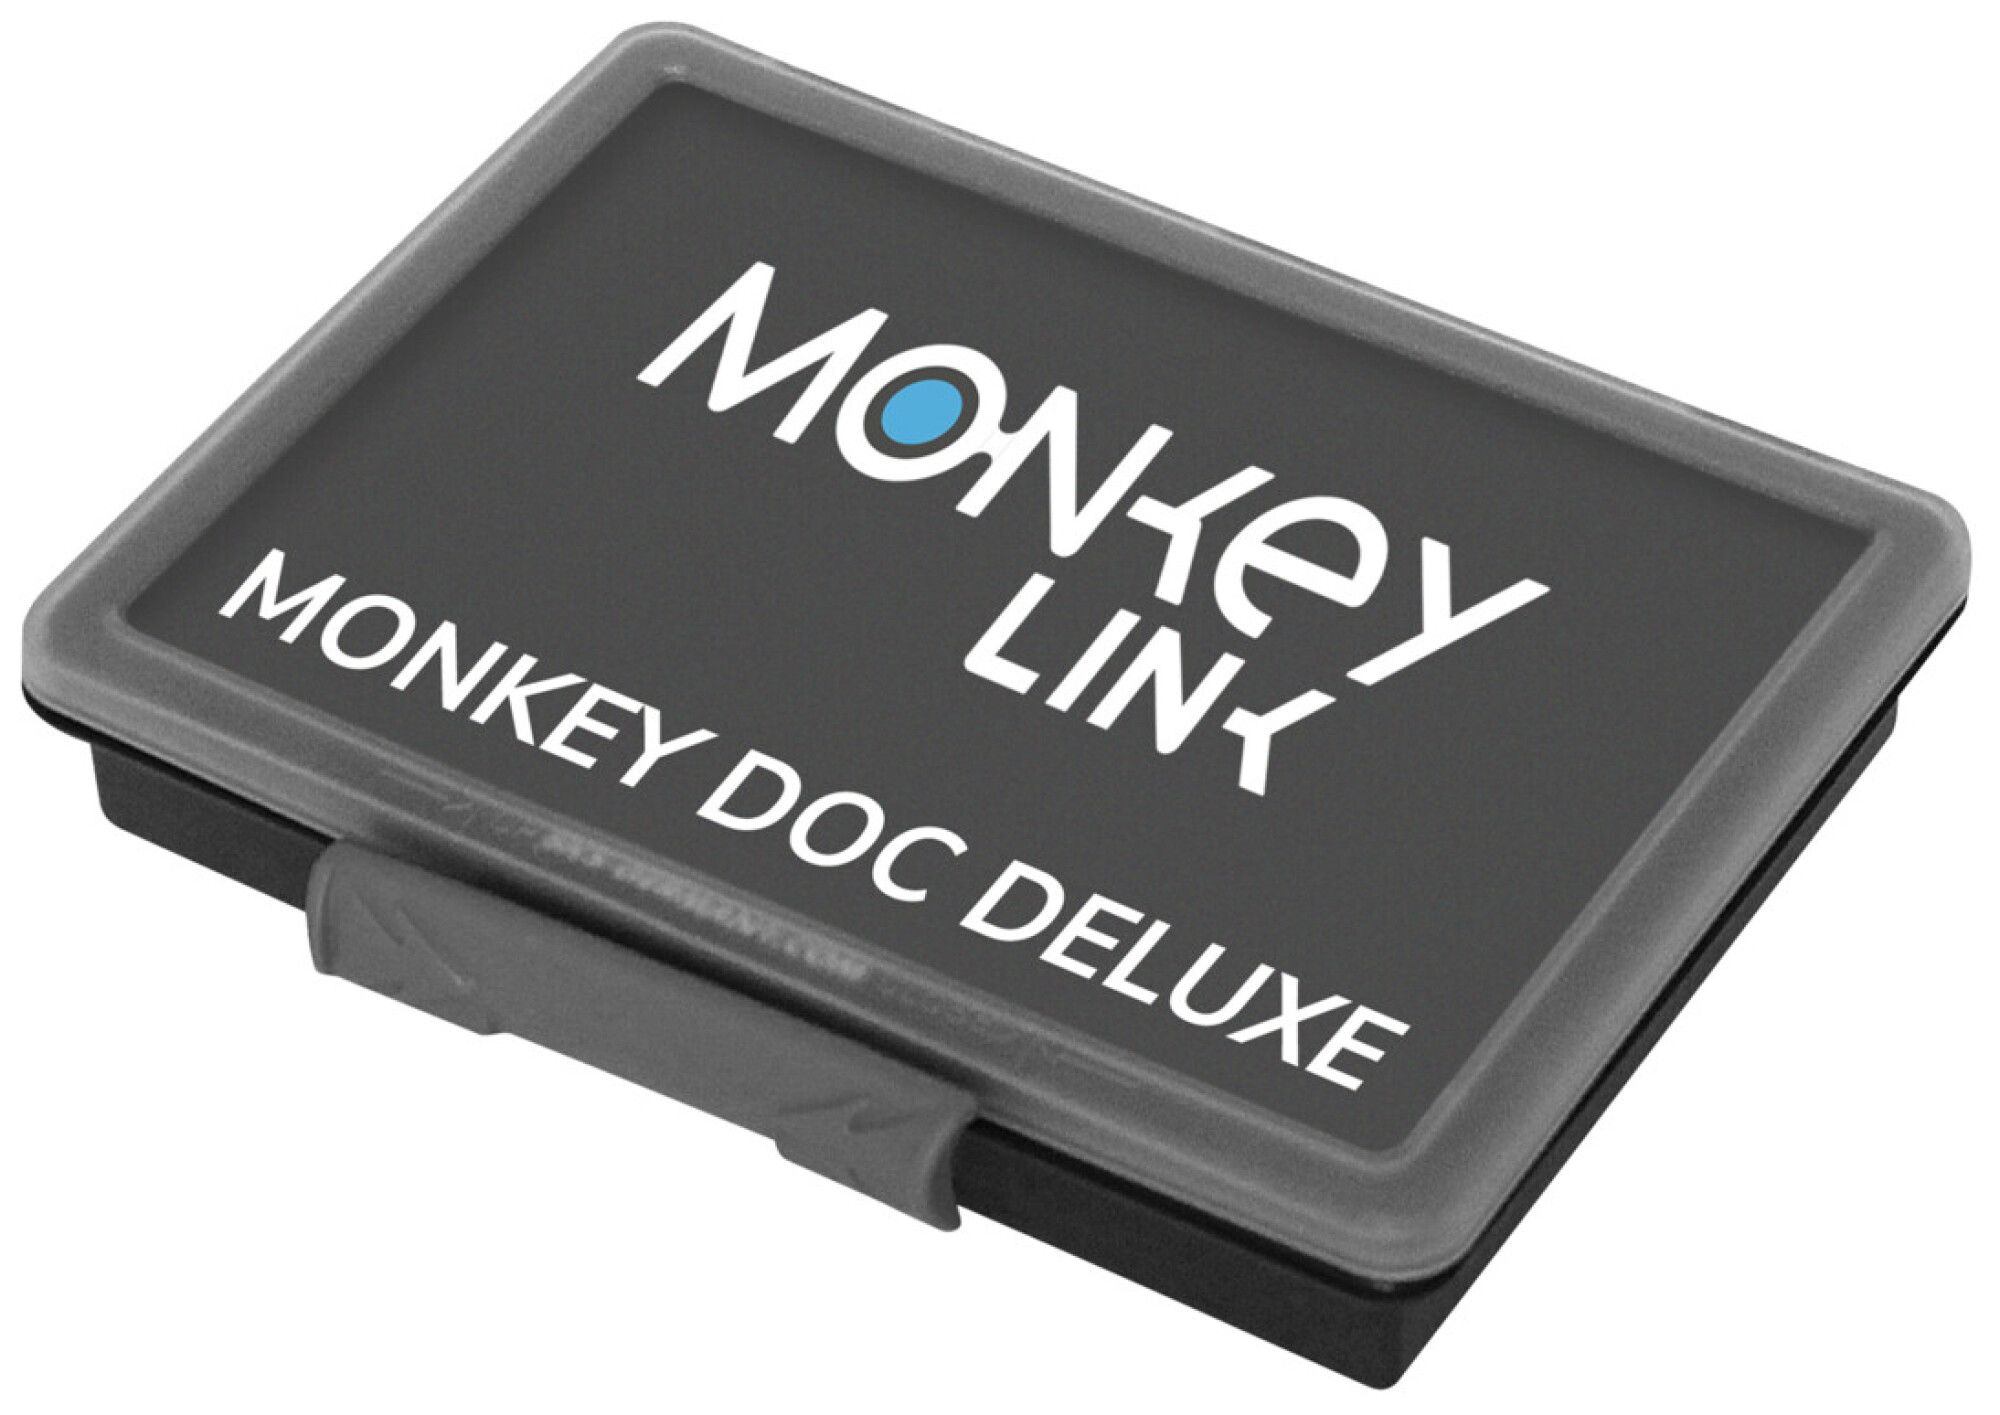 MonkeyLink MONKEYDOC DELUXE (Bild 2)